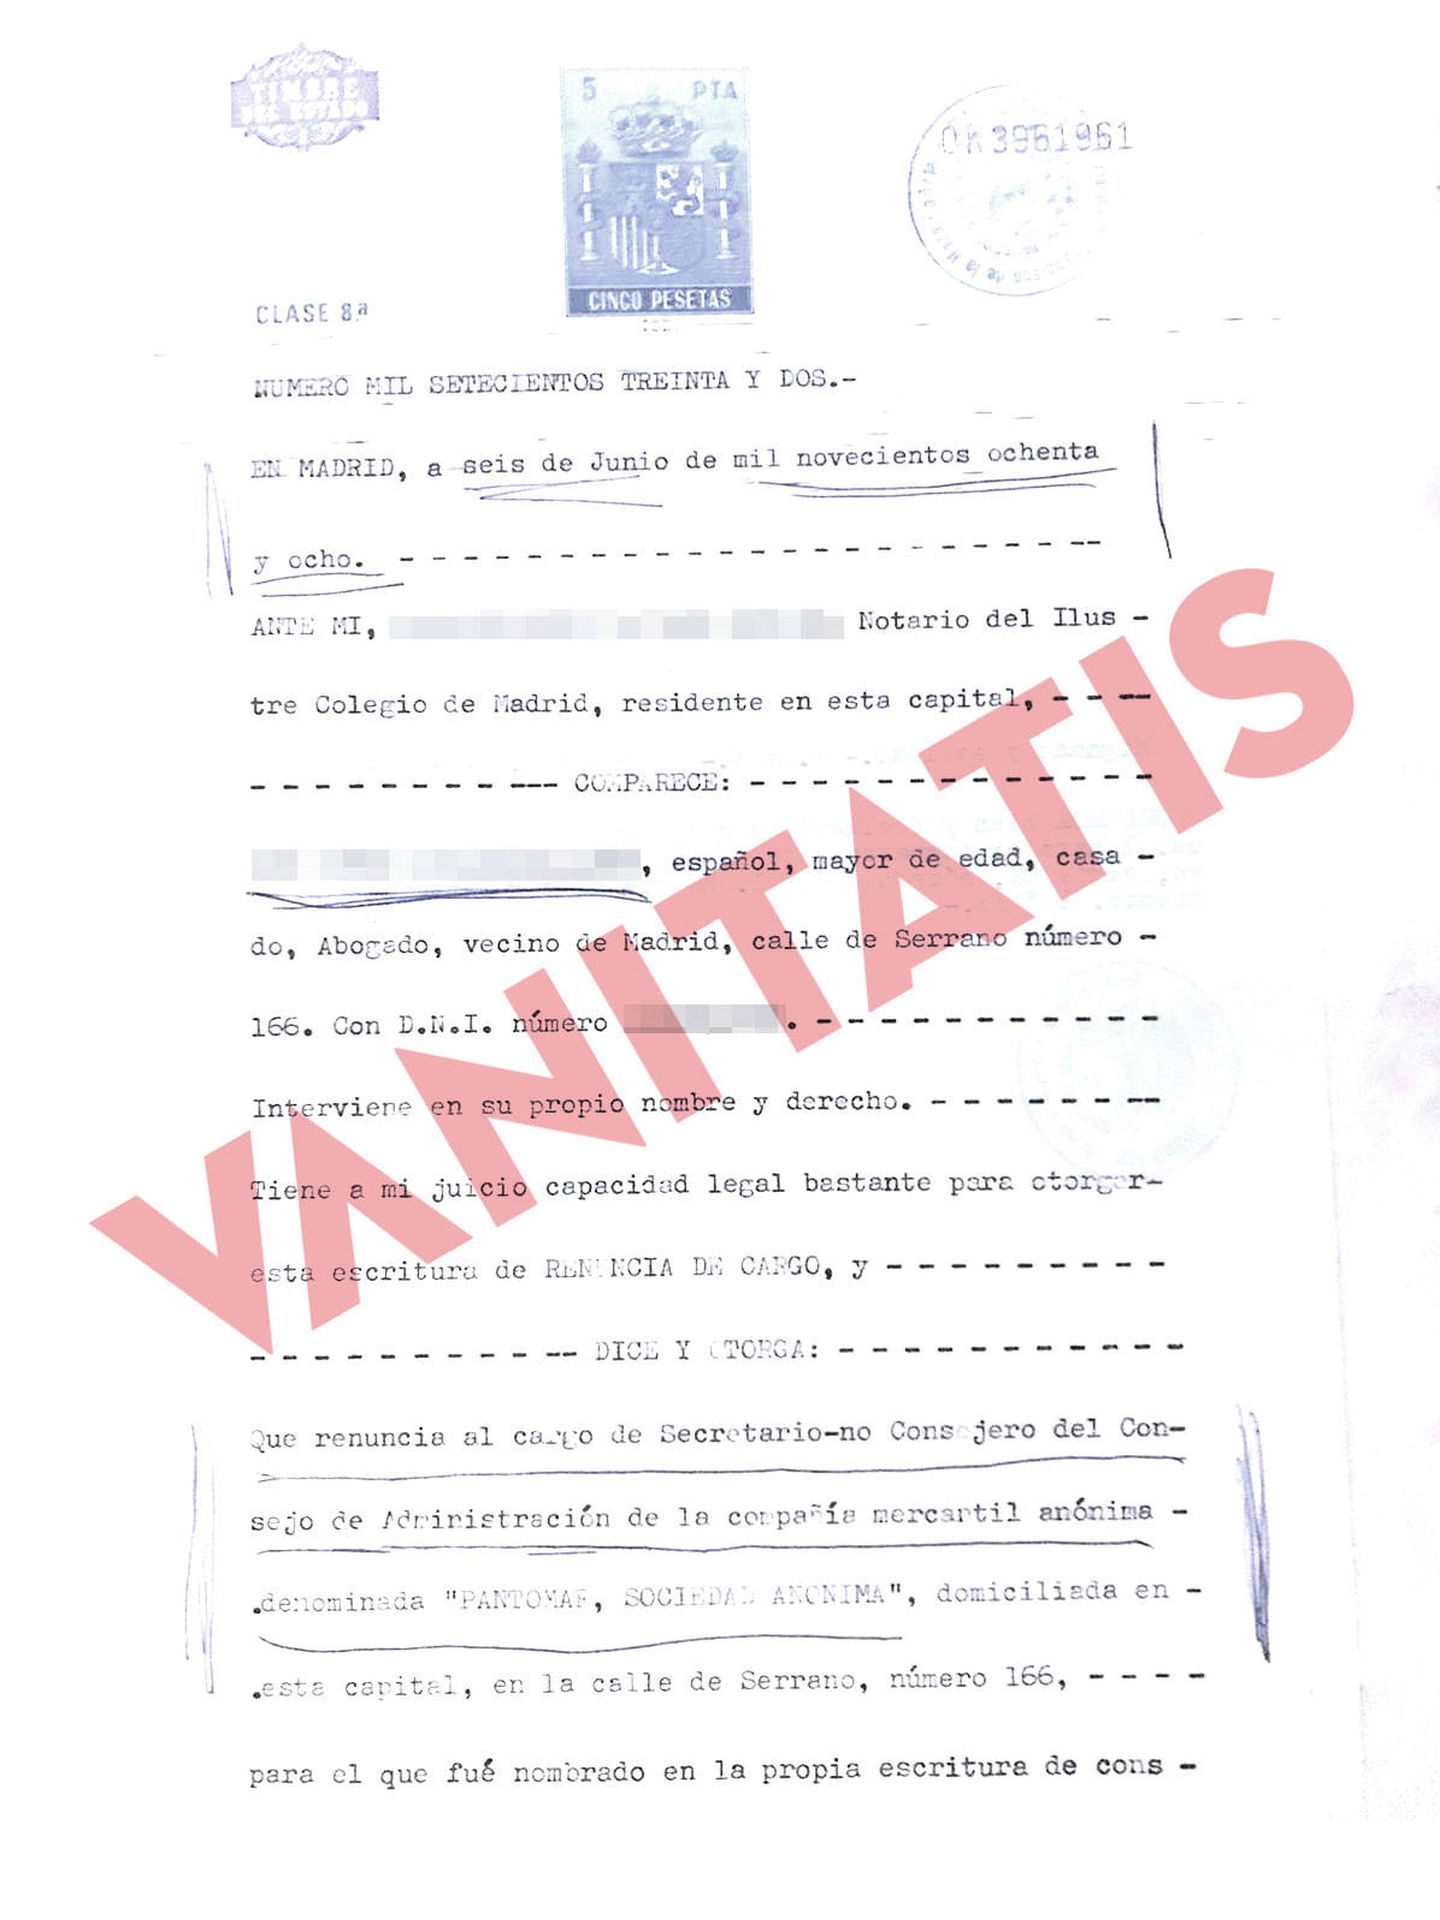 Reproducción del documento notarial que desvincula a Ramón Calderón de Pantomar. 